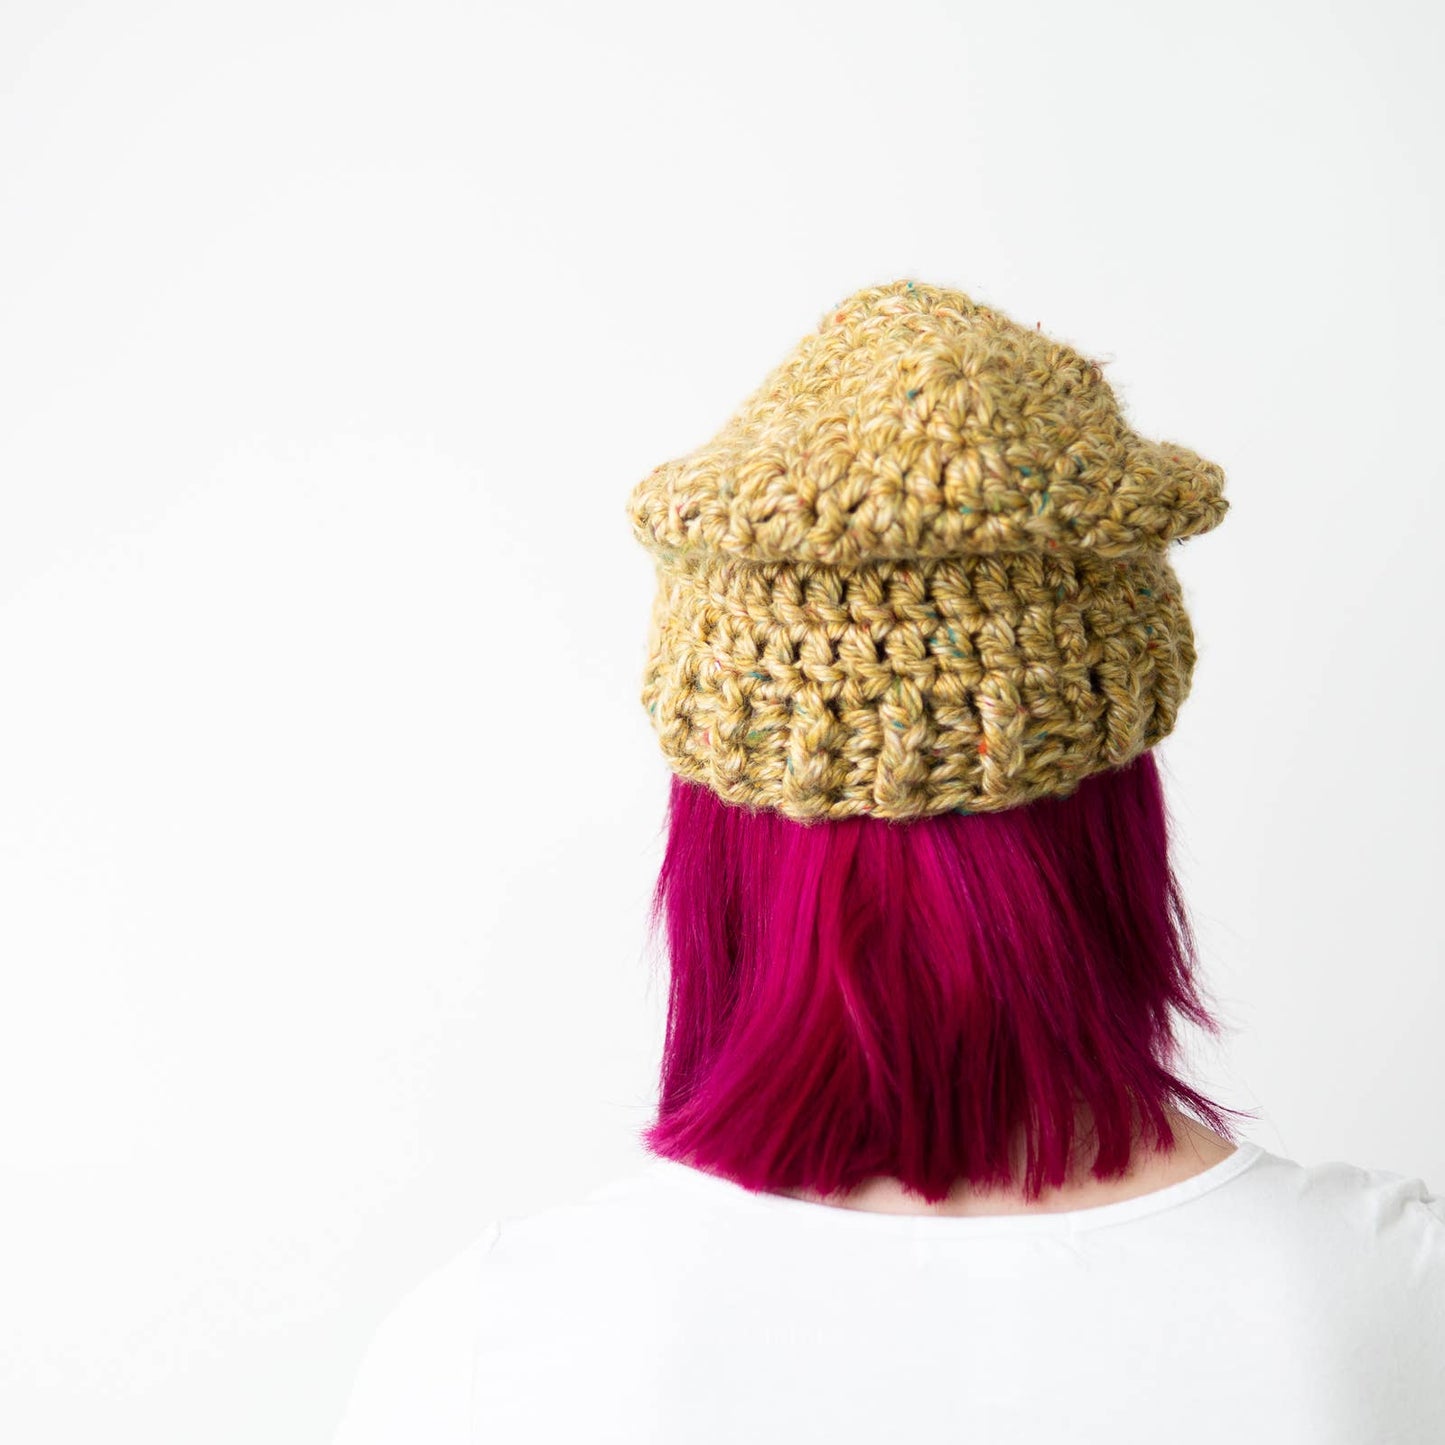 Handmade Crochet Knit Mustard Yellow Beanie